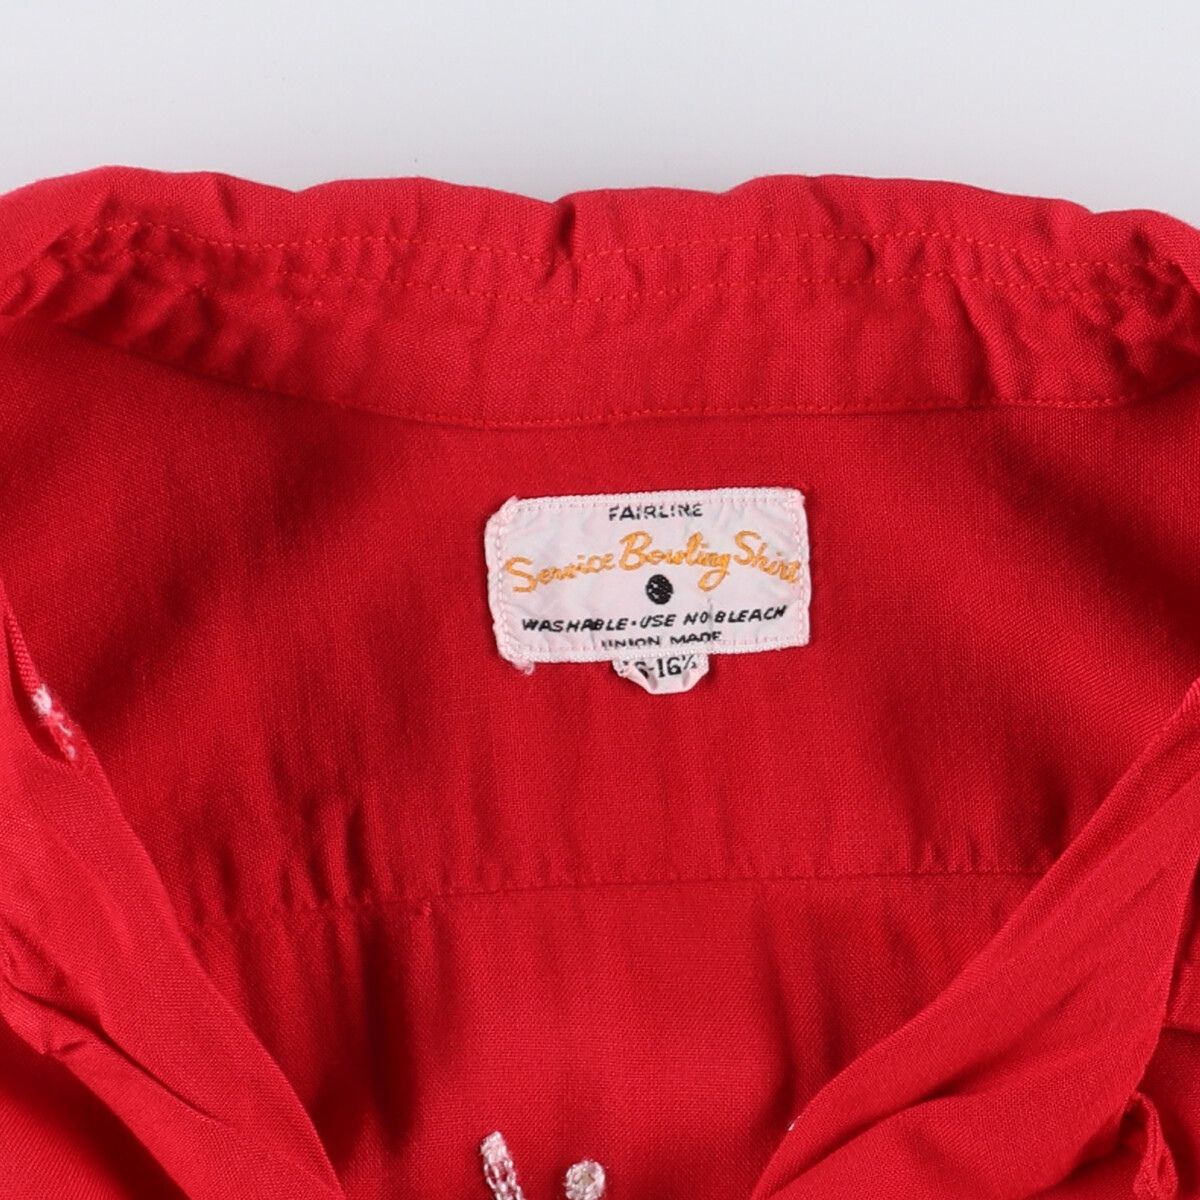 50年代 Seroice Bowling Shirt チェーン刺繍 オープンカラー レーヨンボウリングシャツ USA製 メンズL ヴィンテージ /evb000889